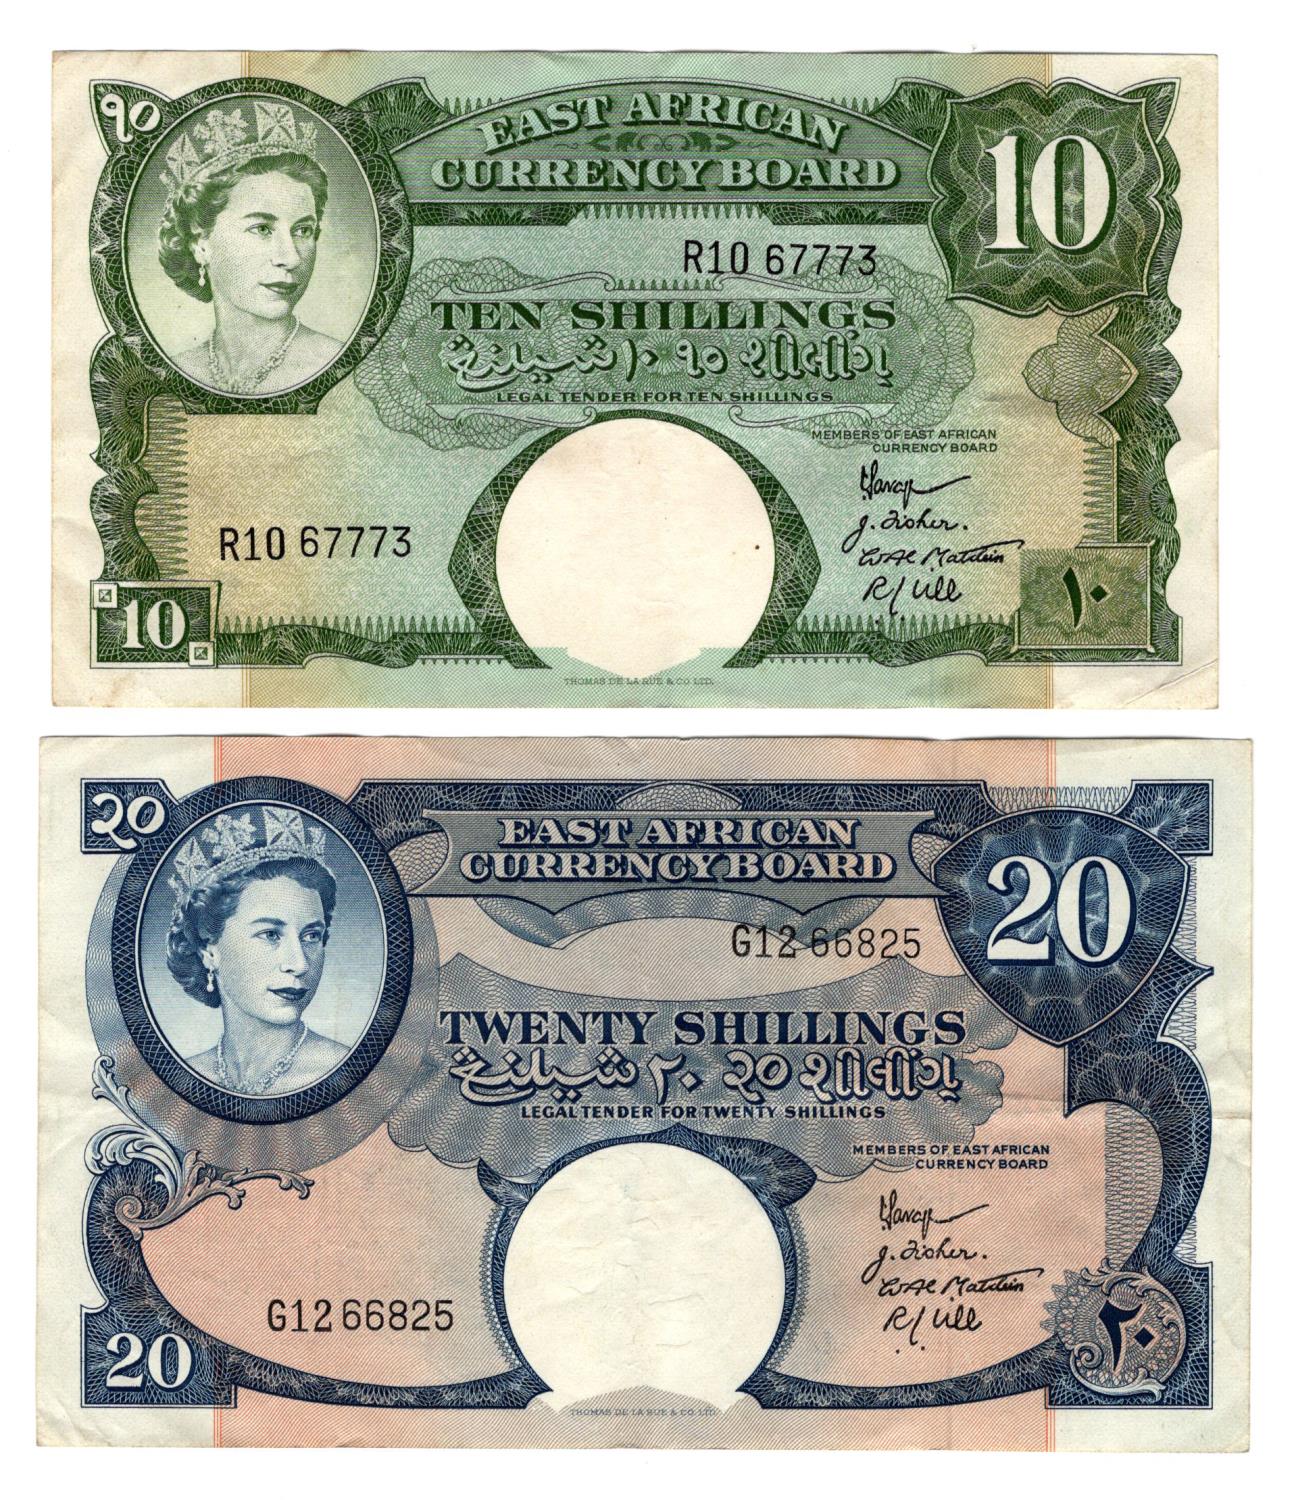 East African Currency Board (2), 20 Shillings issued 1958 - 1960, portrait Queen Elizabeth II top